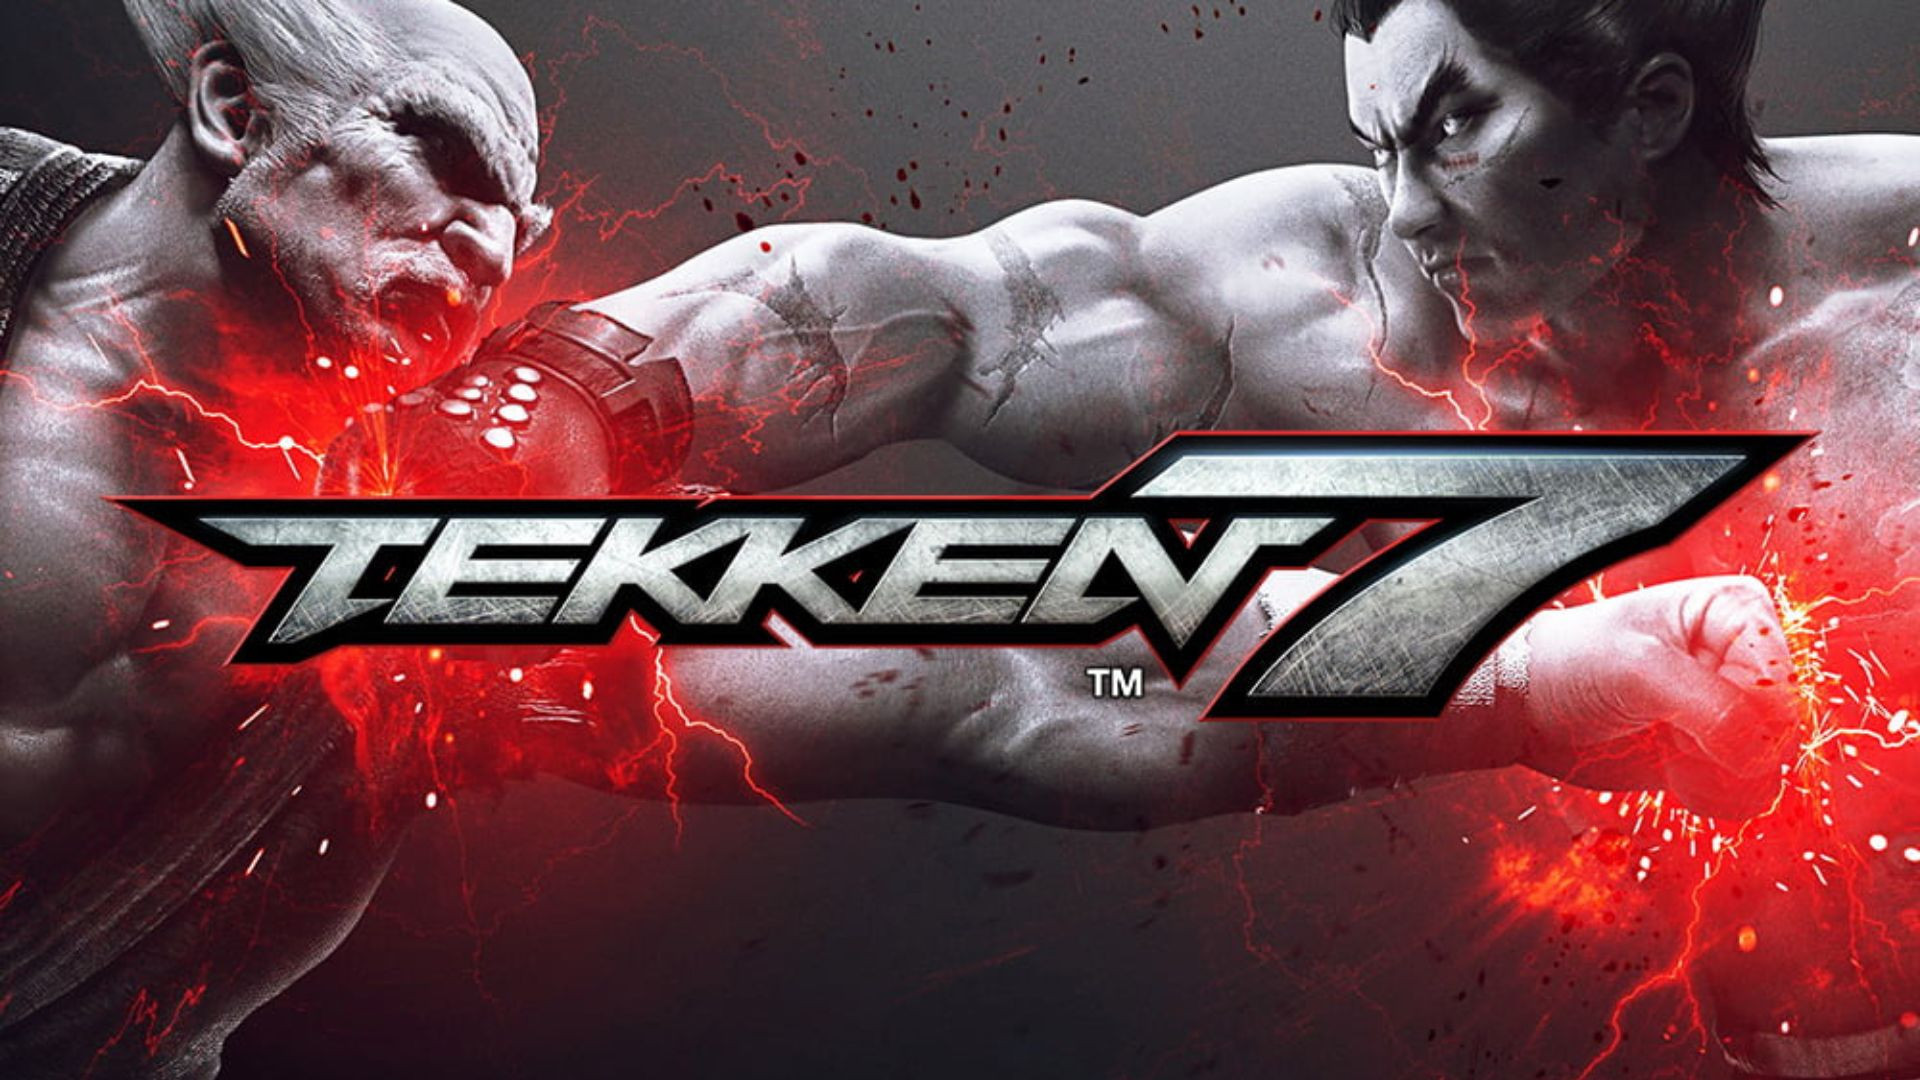 Meilleurs personnages dans Tekken 7, qui se retrouve en haut de la tier-list ?